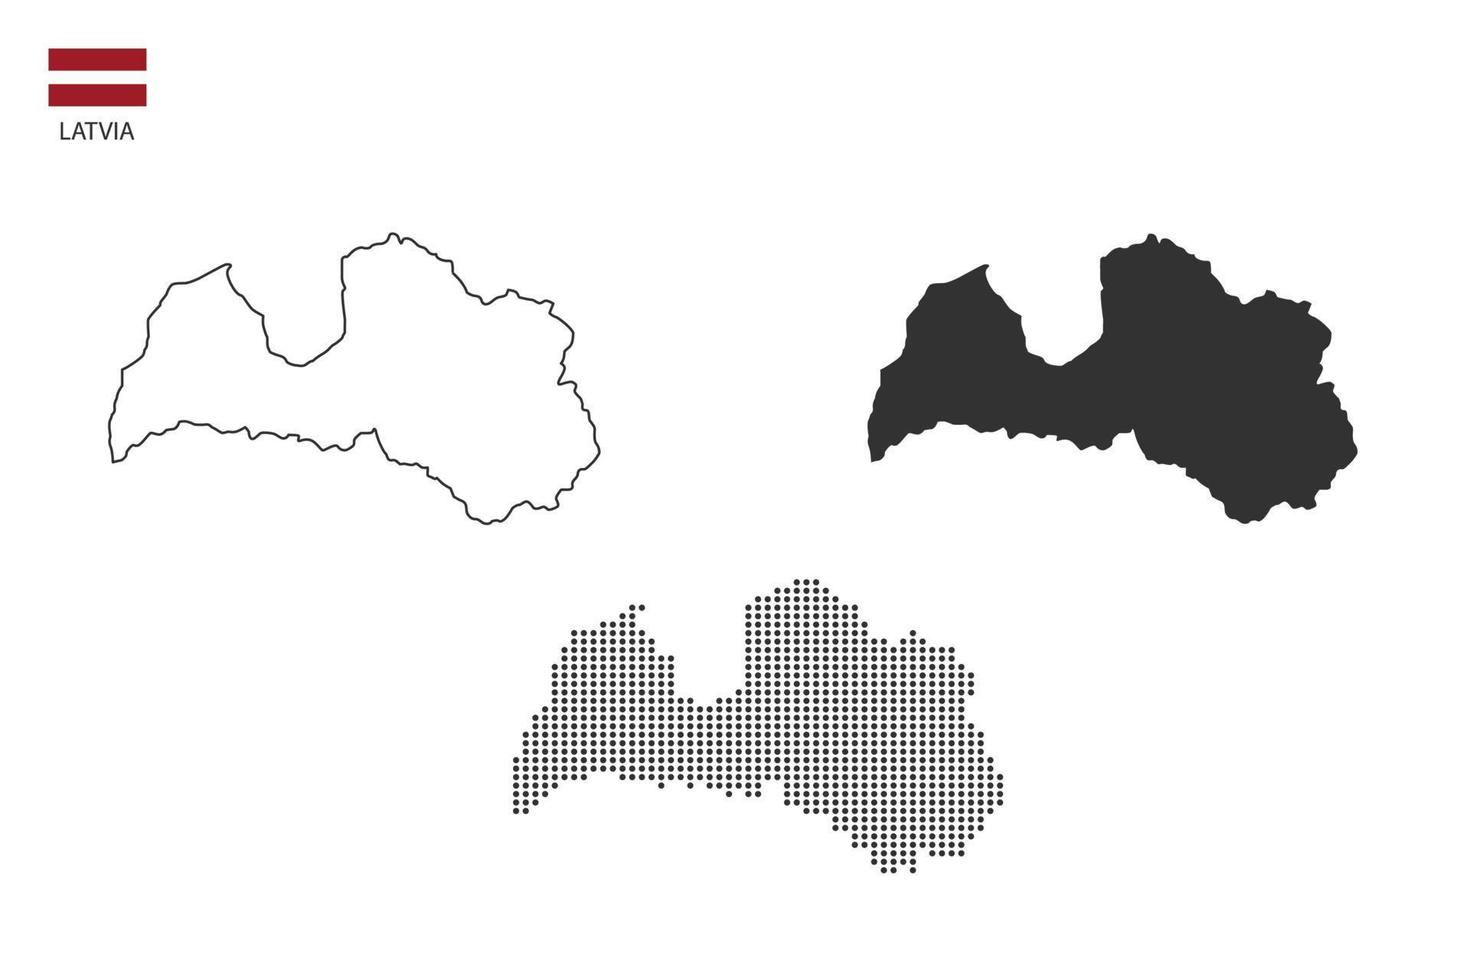 3 versiones del vector de la ciudad del mapa de letonia por estilo de simplicidad de contorno negro delgado, estilo de punto negro y estilo de sombra oscura. todo en el fondo blanco.